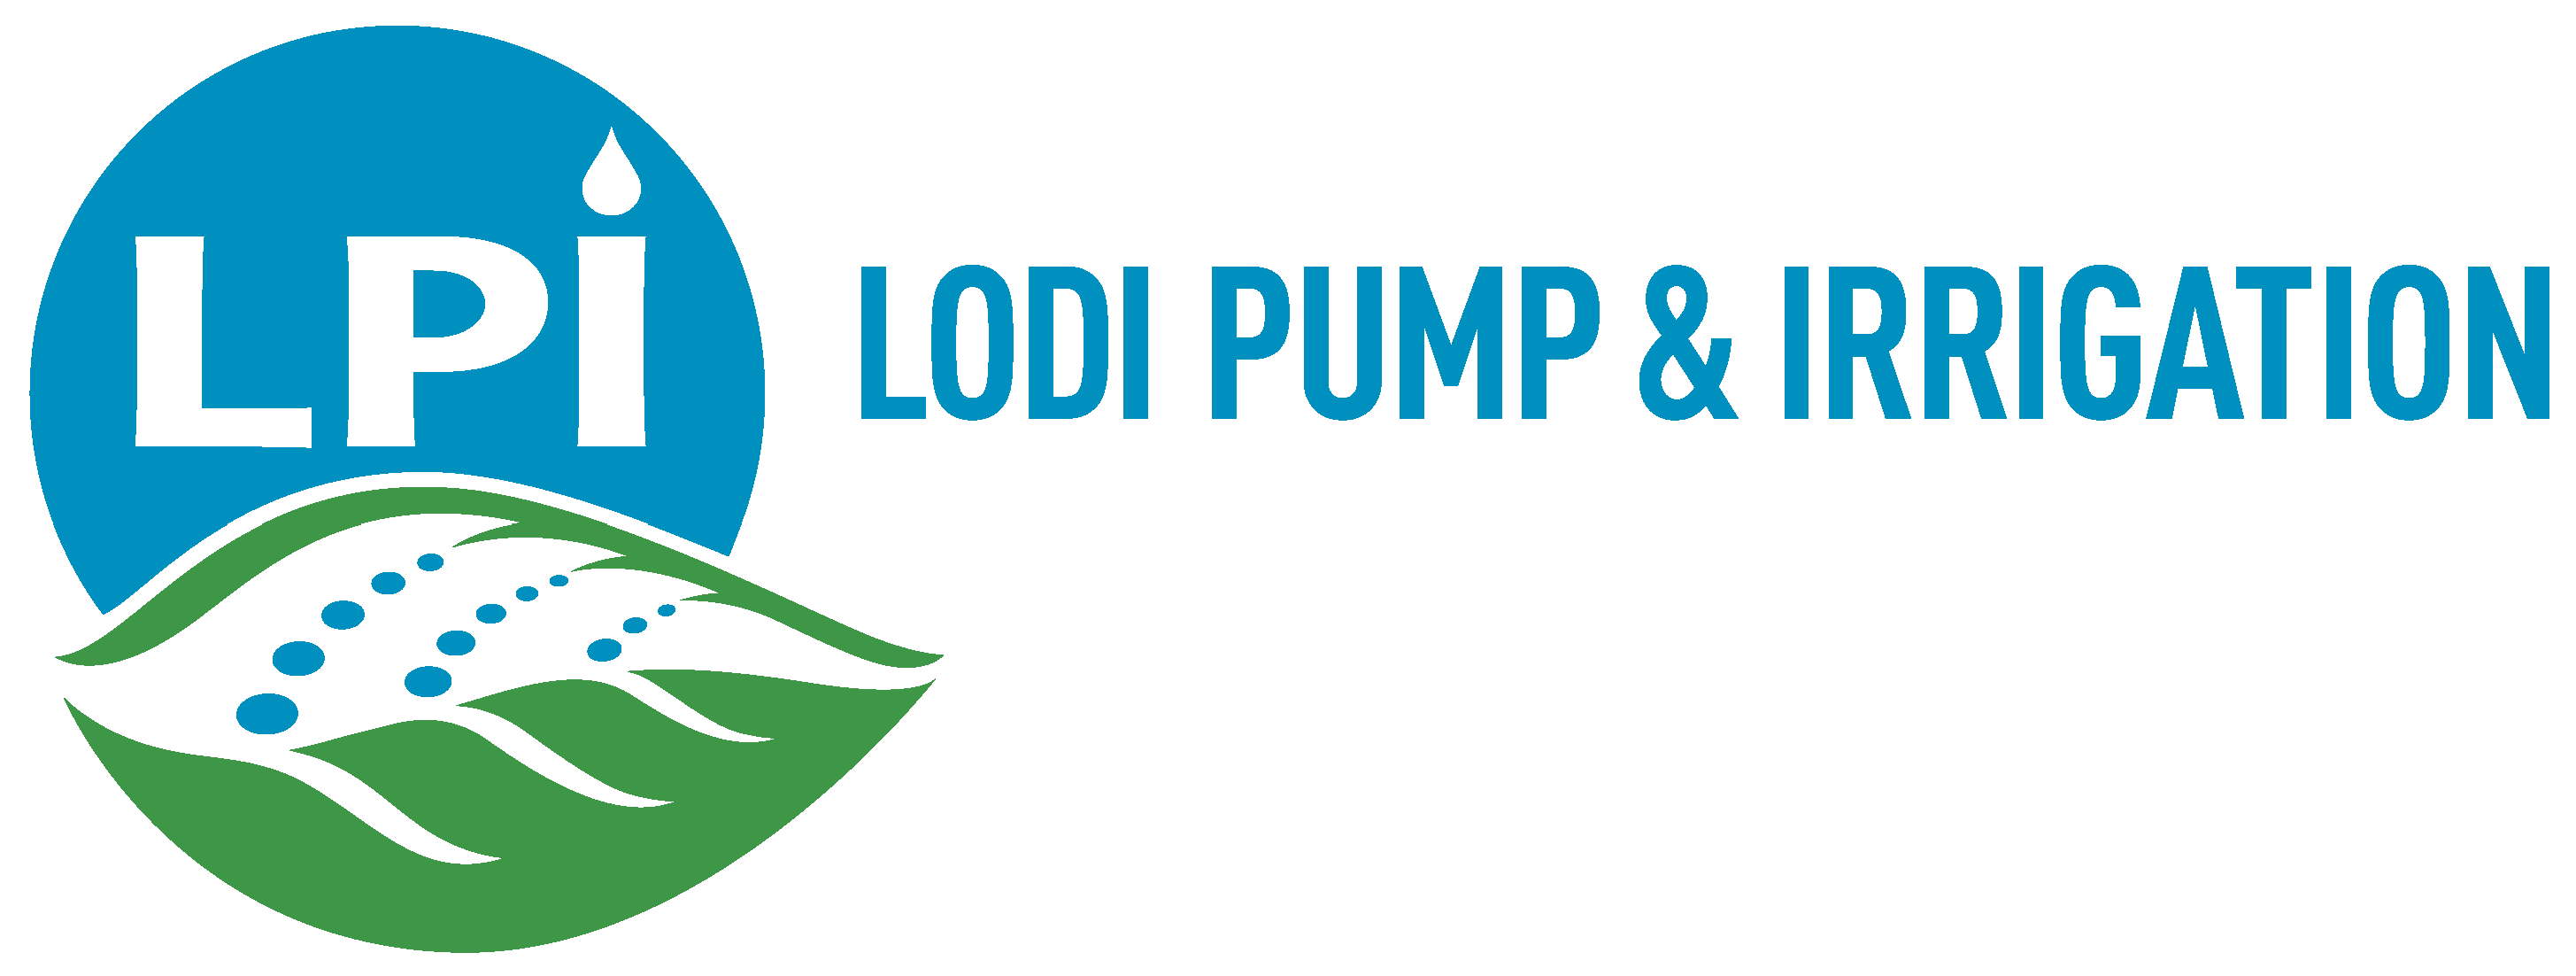 Irrigation Logo - Lodi Pump & Irrigation | Lake County Winegrape Commission